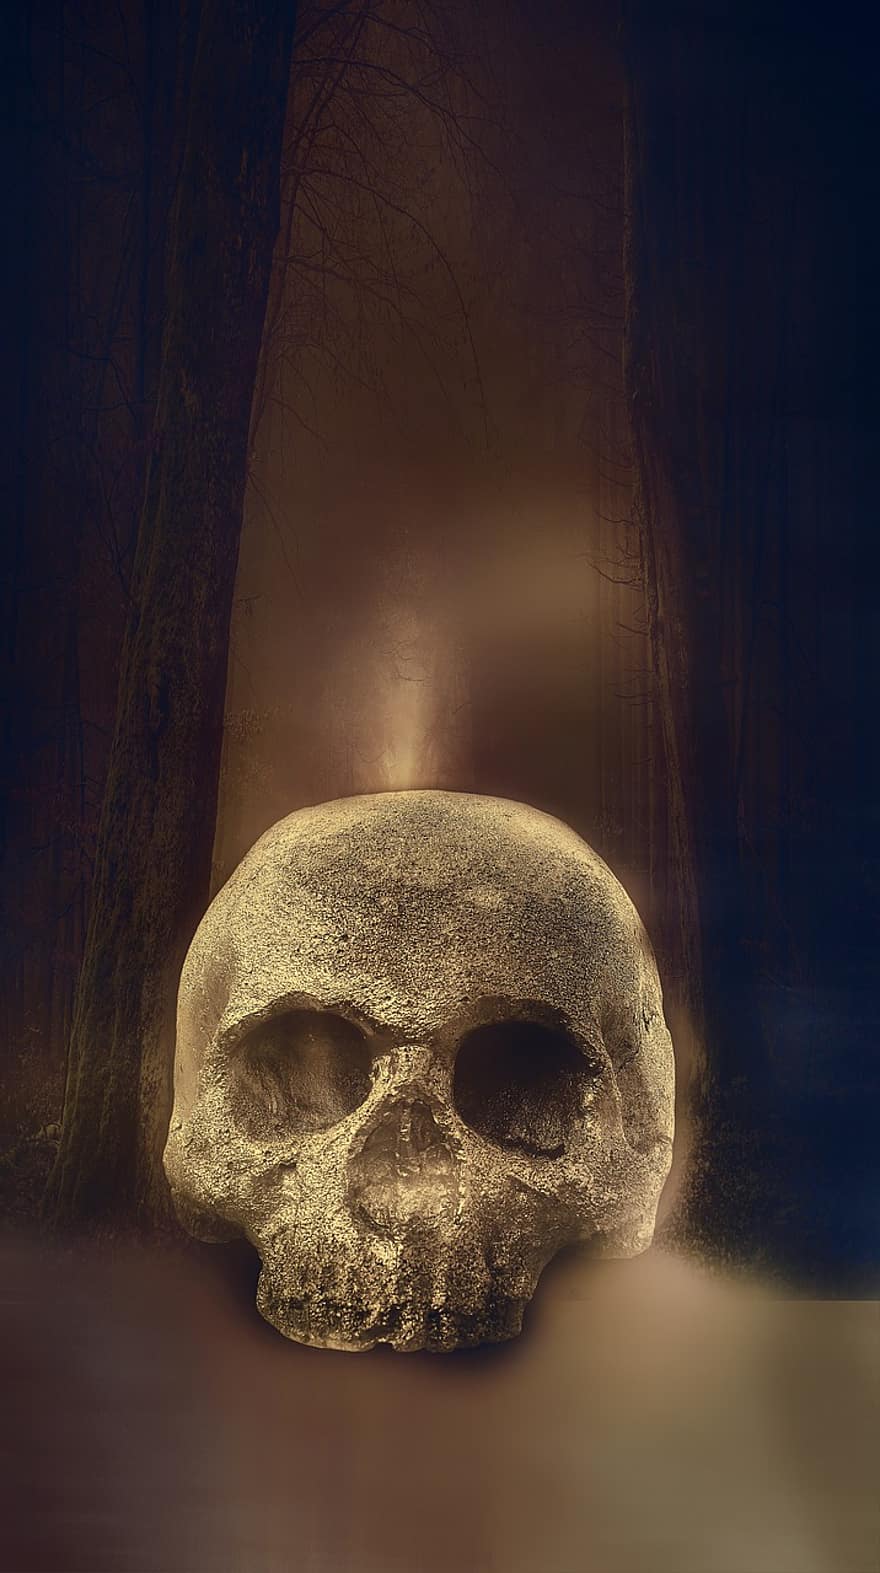 czaszka, szkielet, przerażenie, halloween, za, straszny